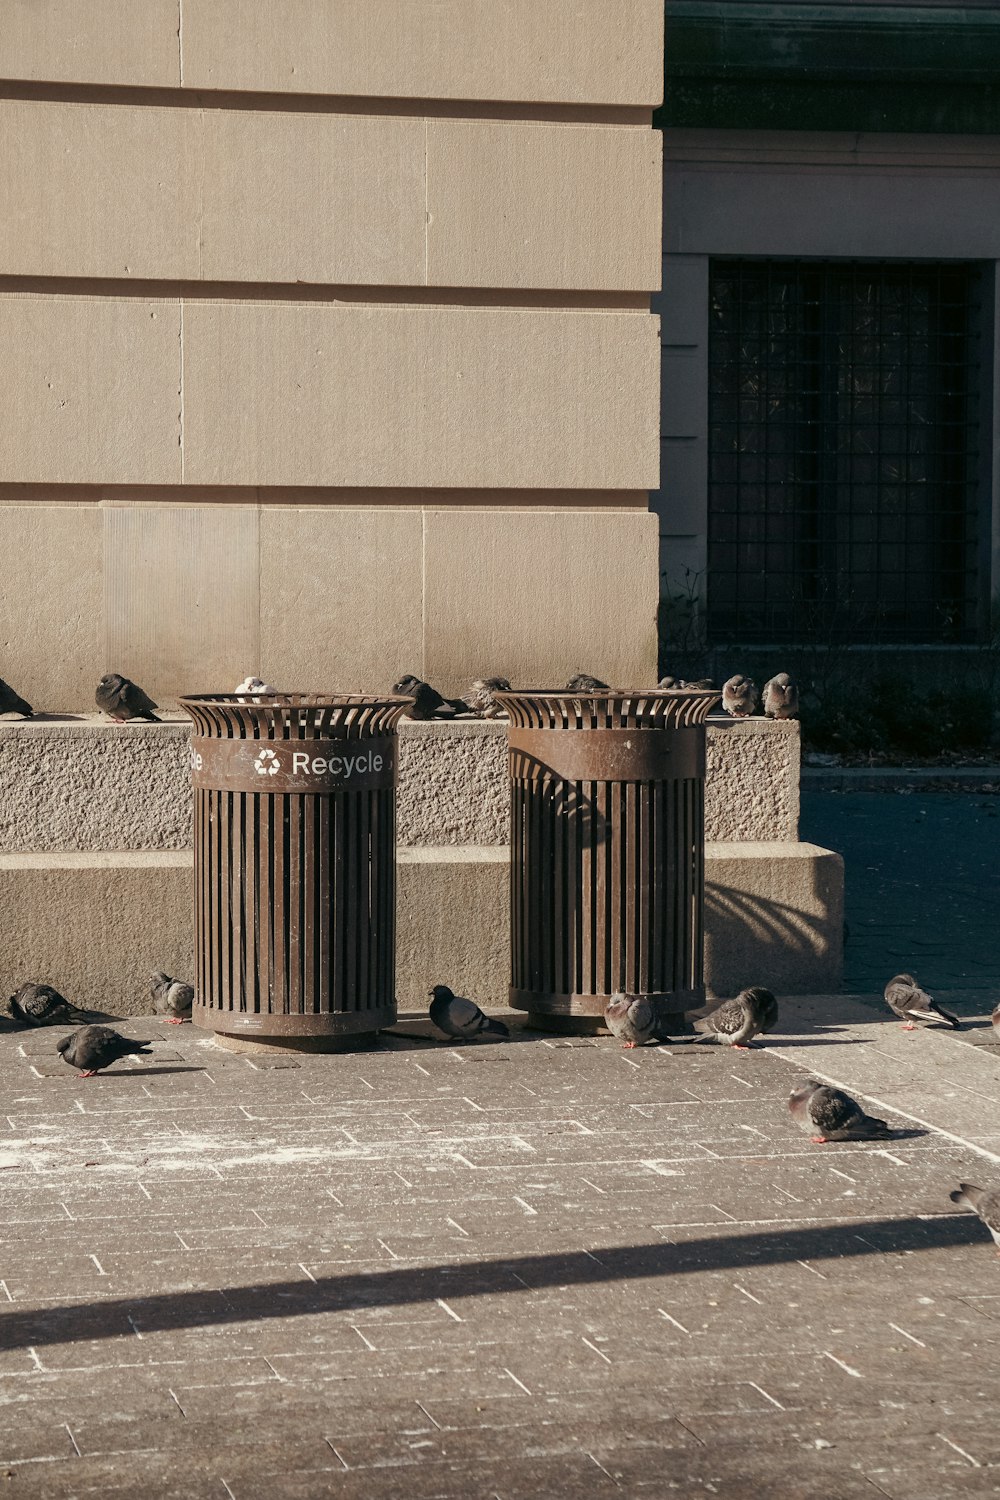 Eine Gruppe von Vögeln, die auf Mülleimern sitzen